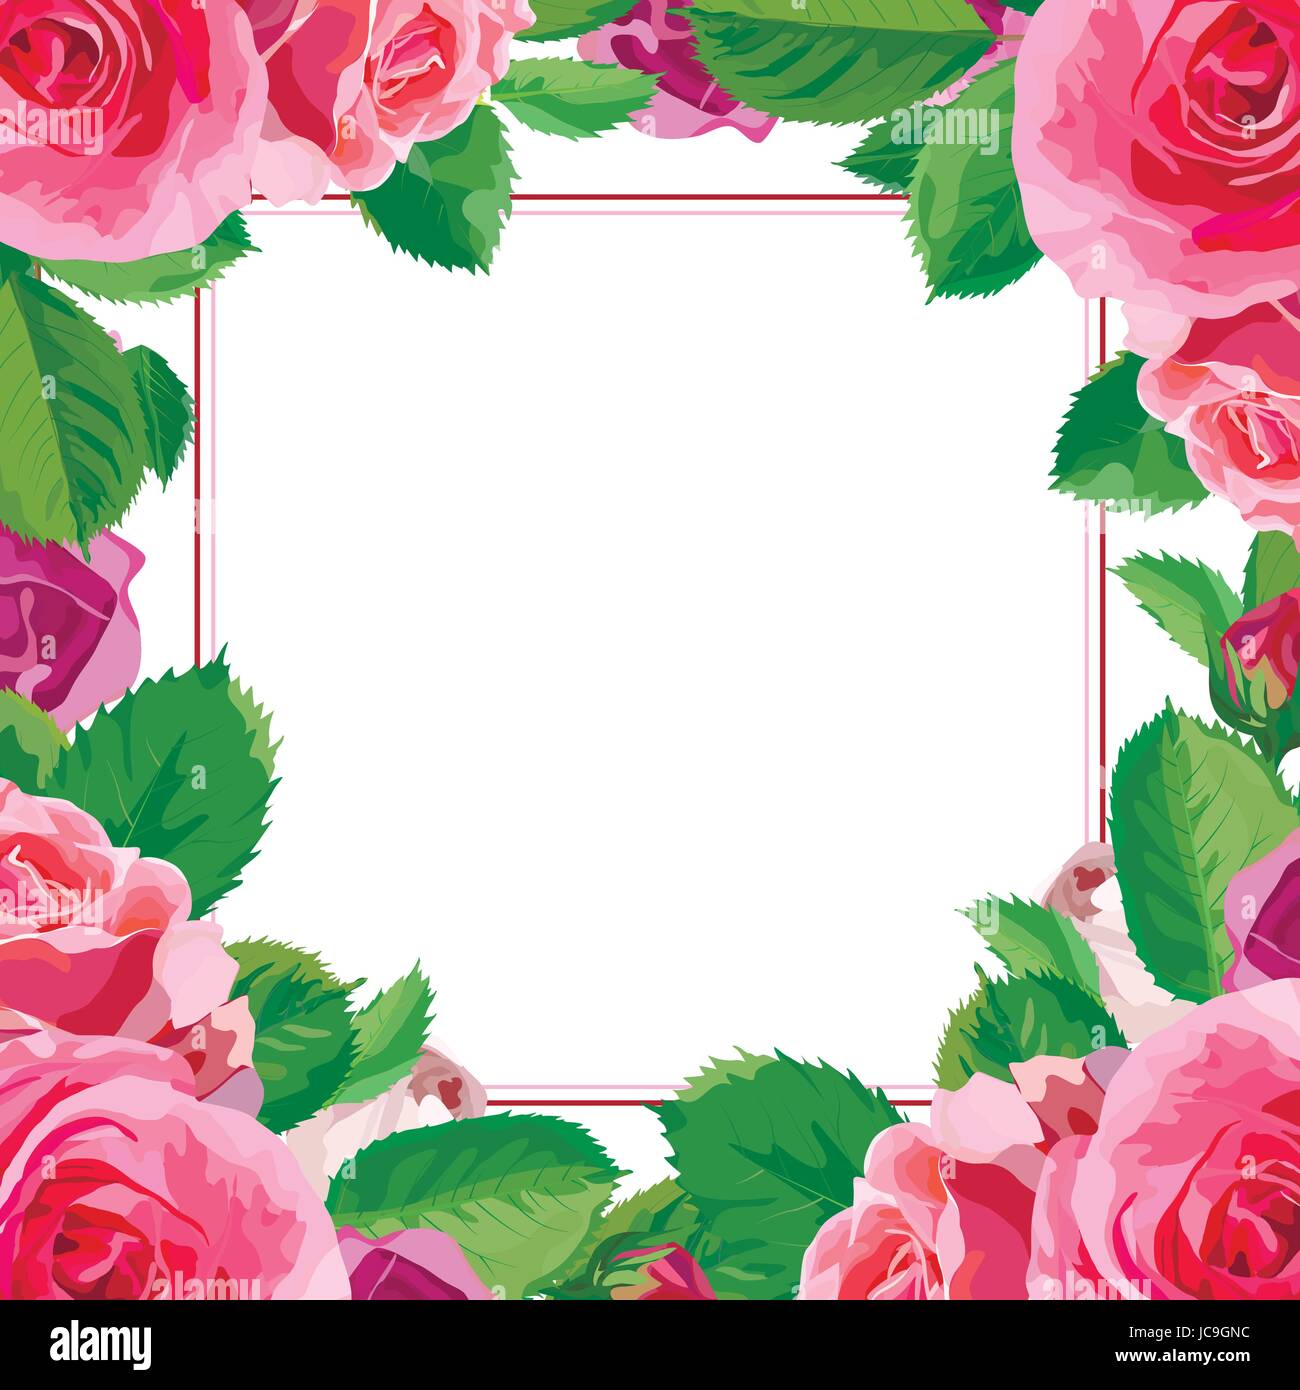 Blüte rosa blühende Blumen Rose grüne schönen Frühling, Sommer-Blumenstrauß-Vektor-Illustration Blätter. Draufsicht quadratisch elegant Aquarell Frame design Stock Vektor